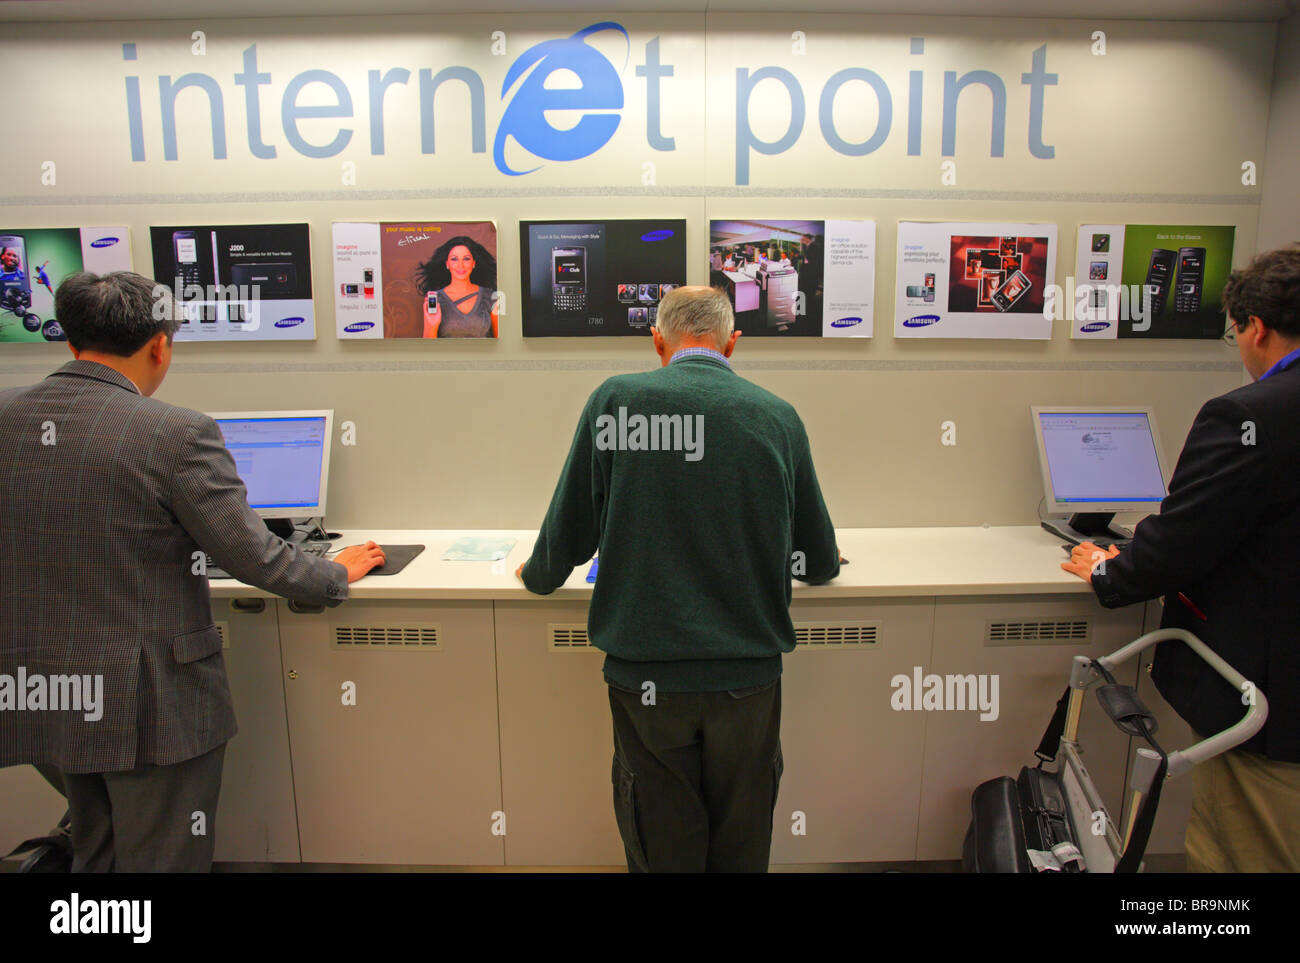 Internet point presso un aeroporto. Foto Stock